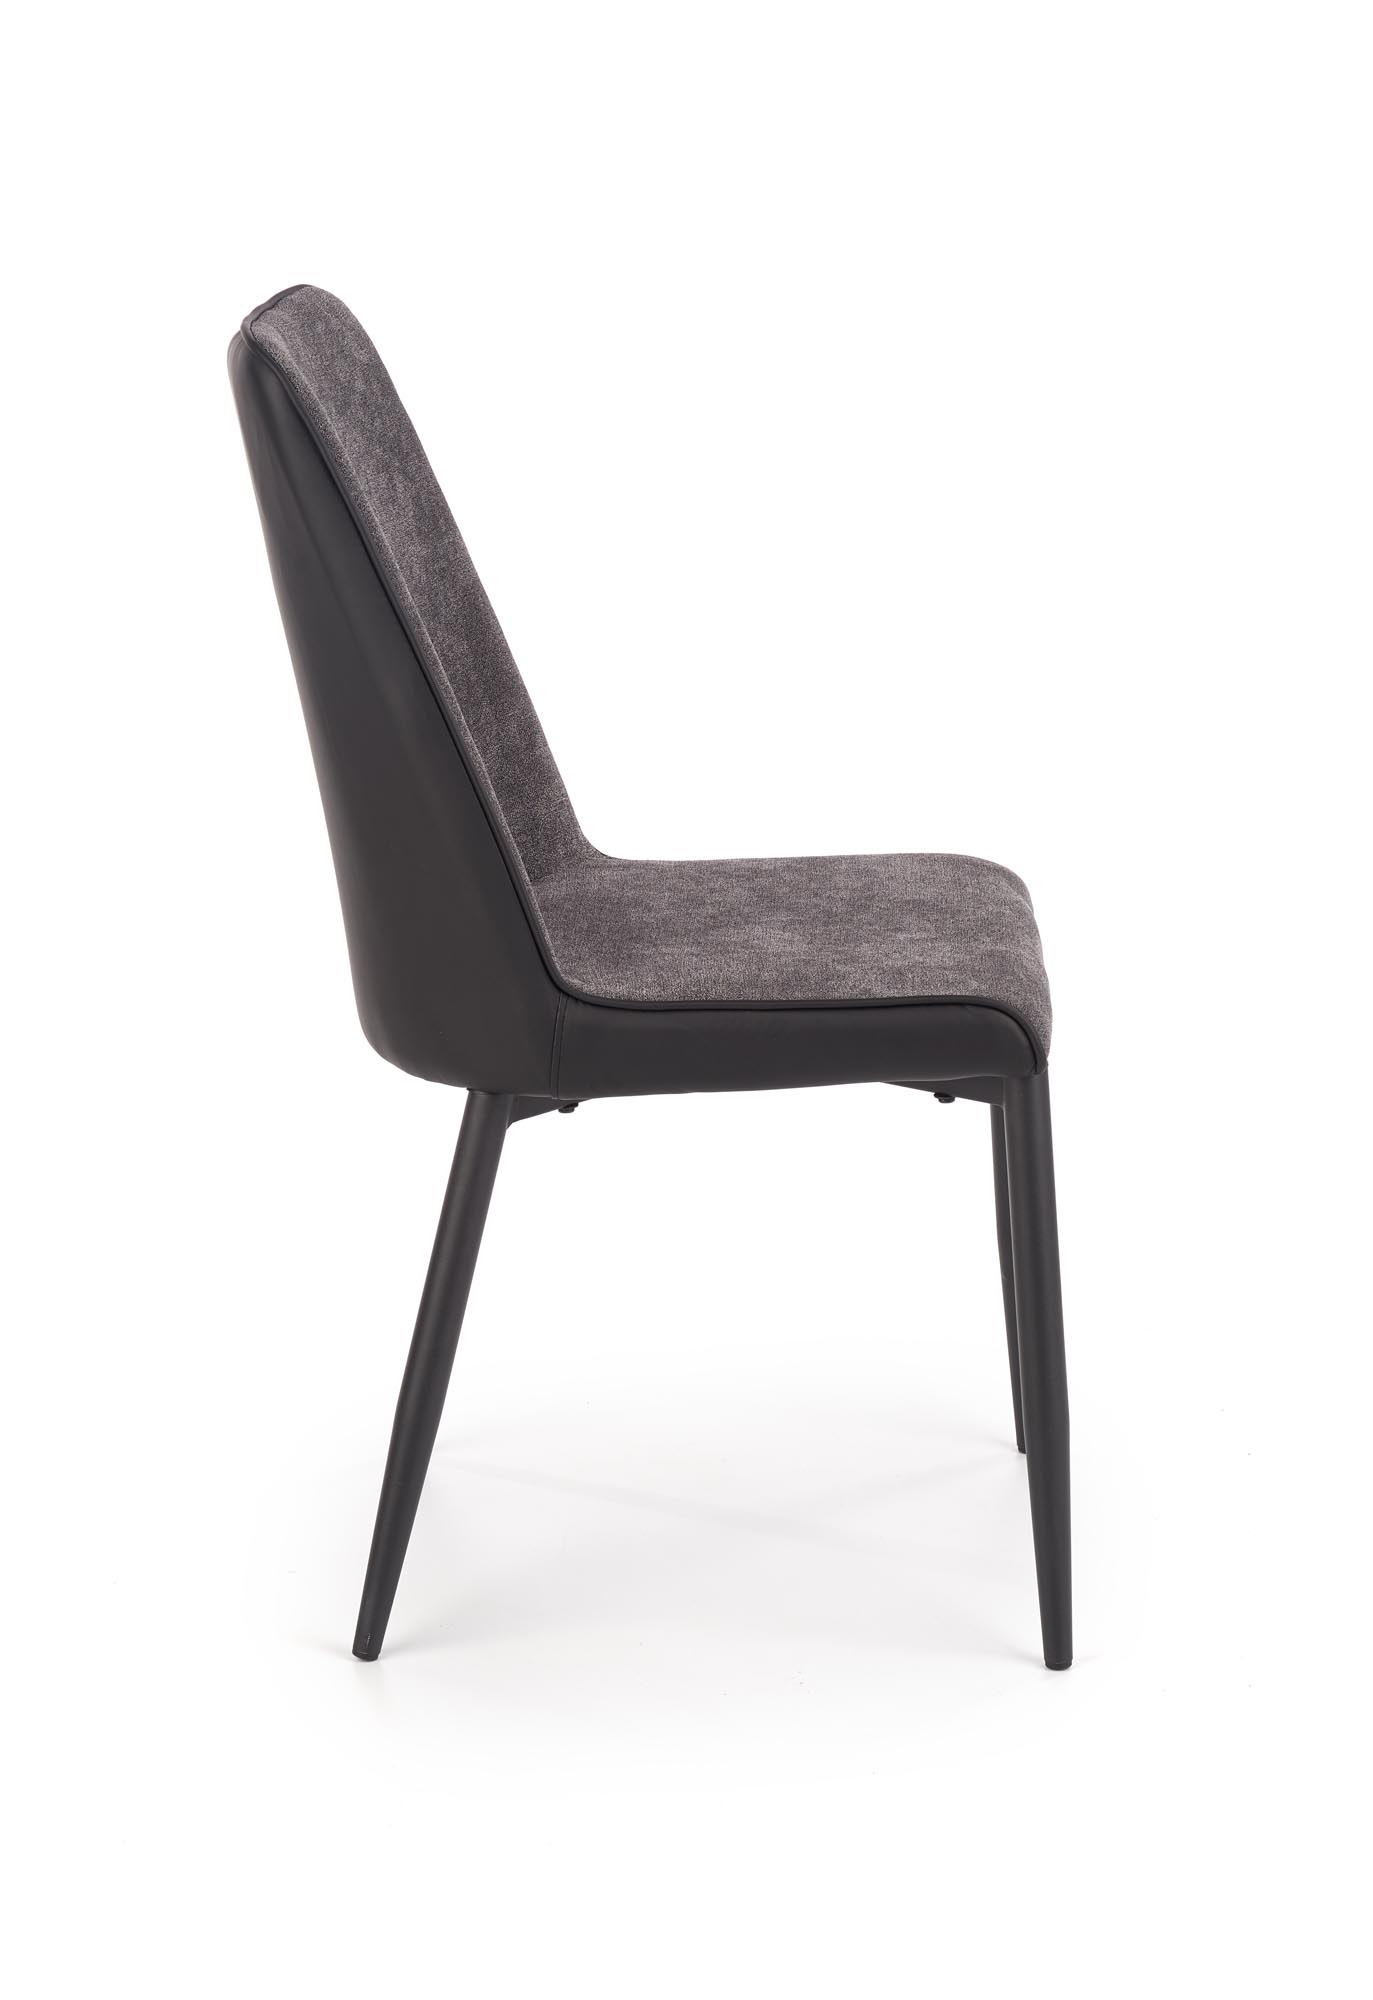 K368 szék - hamu / fekete Židle k368 - Popelový / Fekete